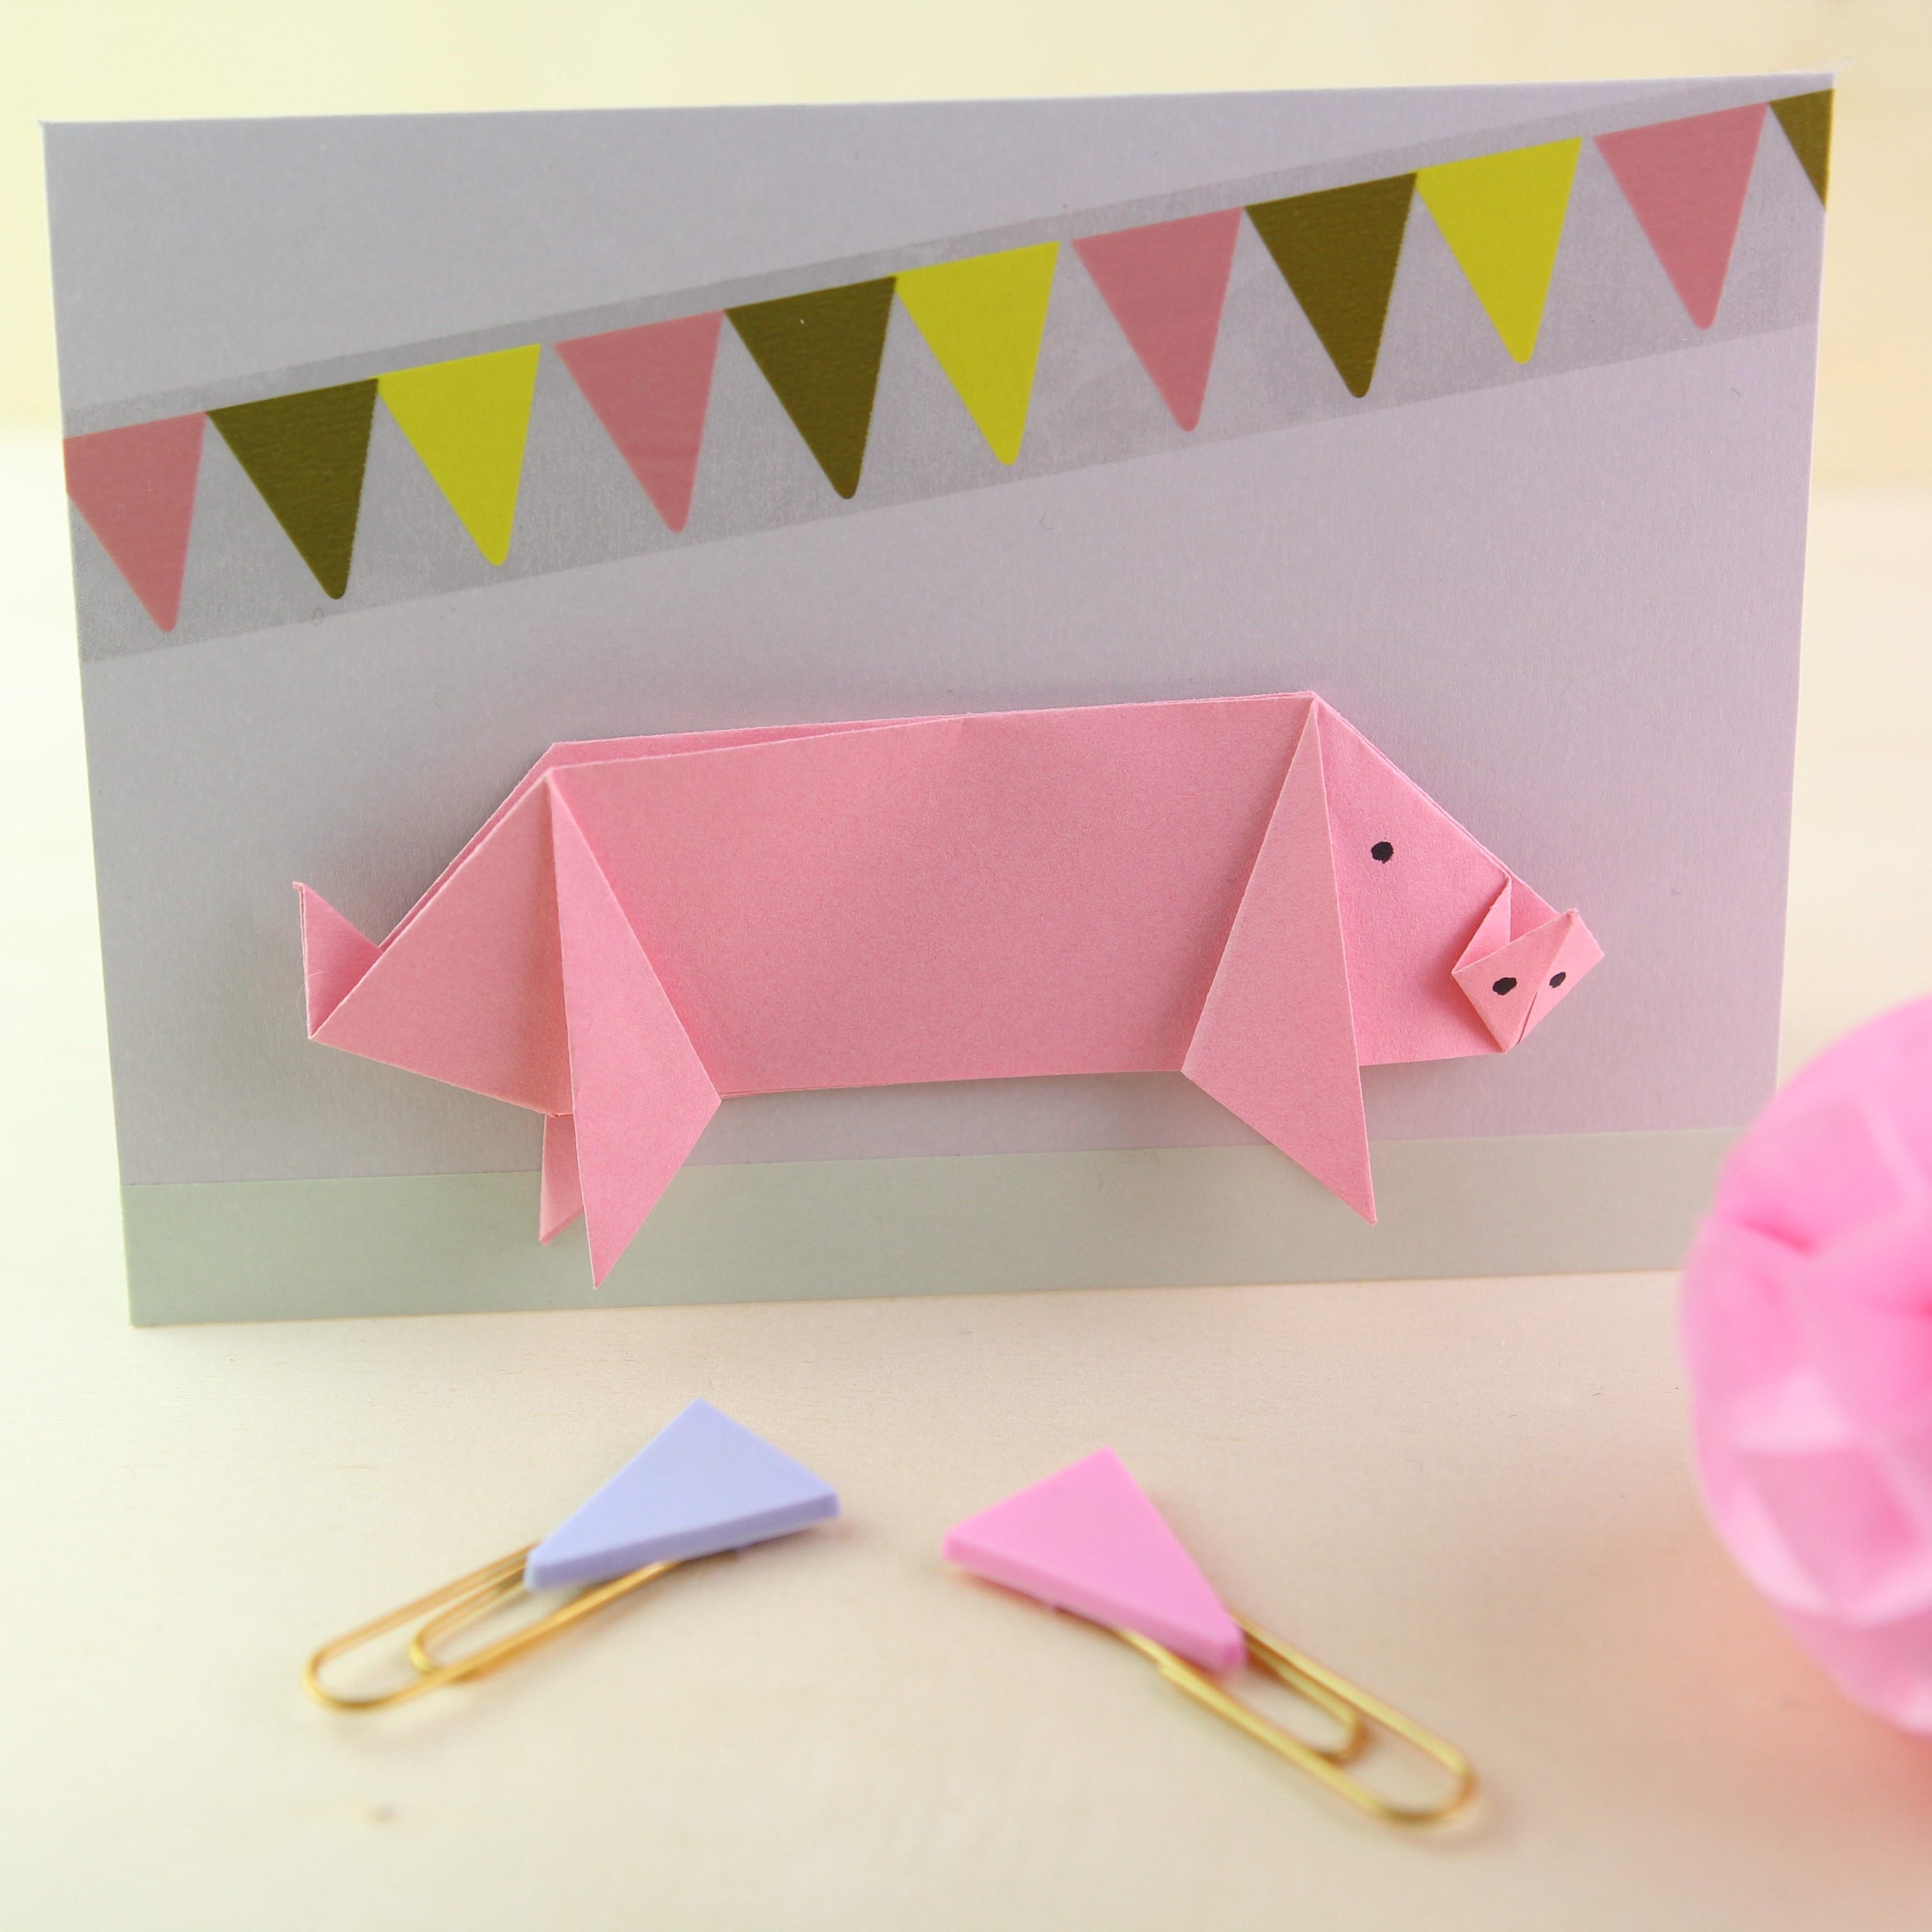 Glücksschweine kann man nie genug haben - einfache Origami für tolle Glückwunschkarten #diyweek #diygeschenke